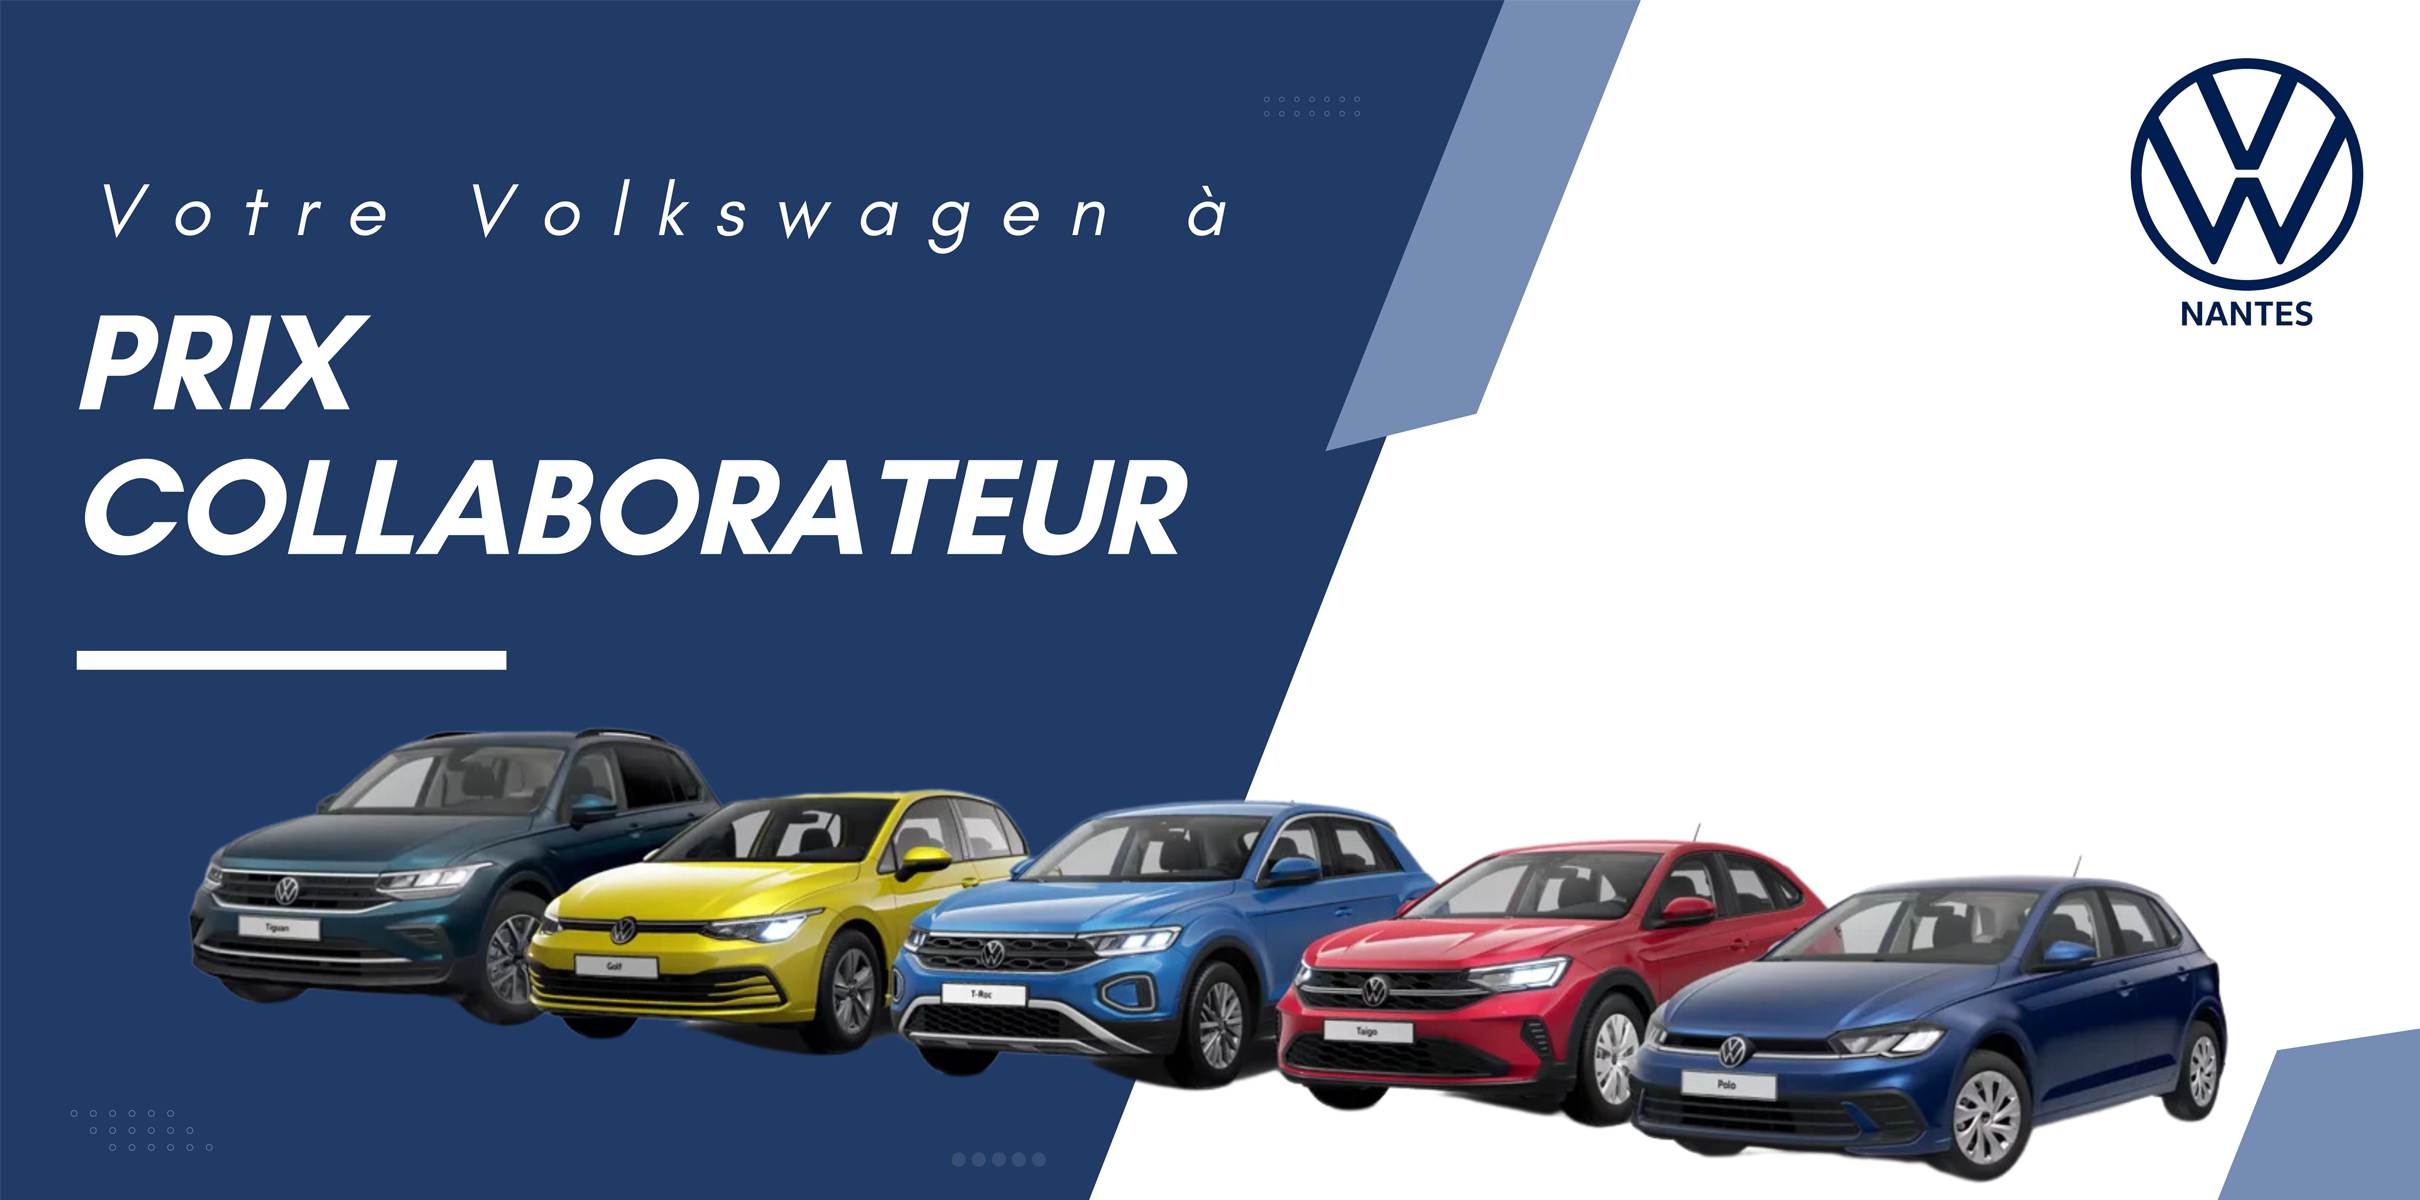 AUTO GARAGE DE L'OUEST - En juin, votre Volkswagen à prix collaborateur 